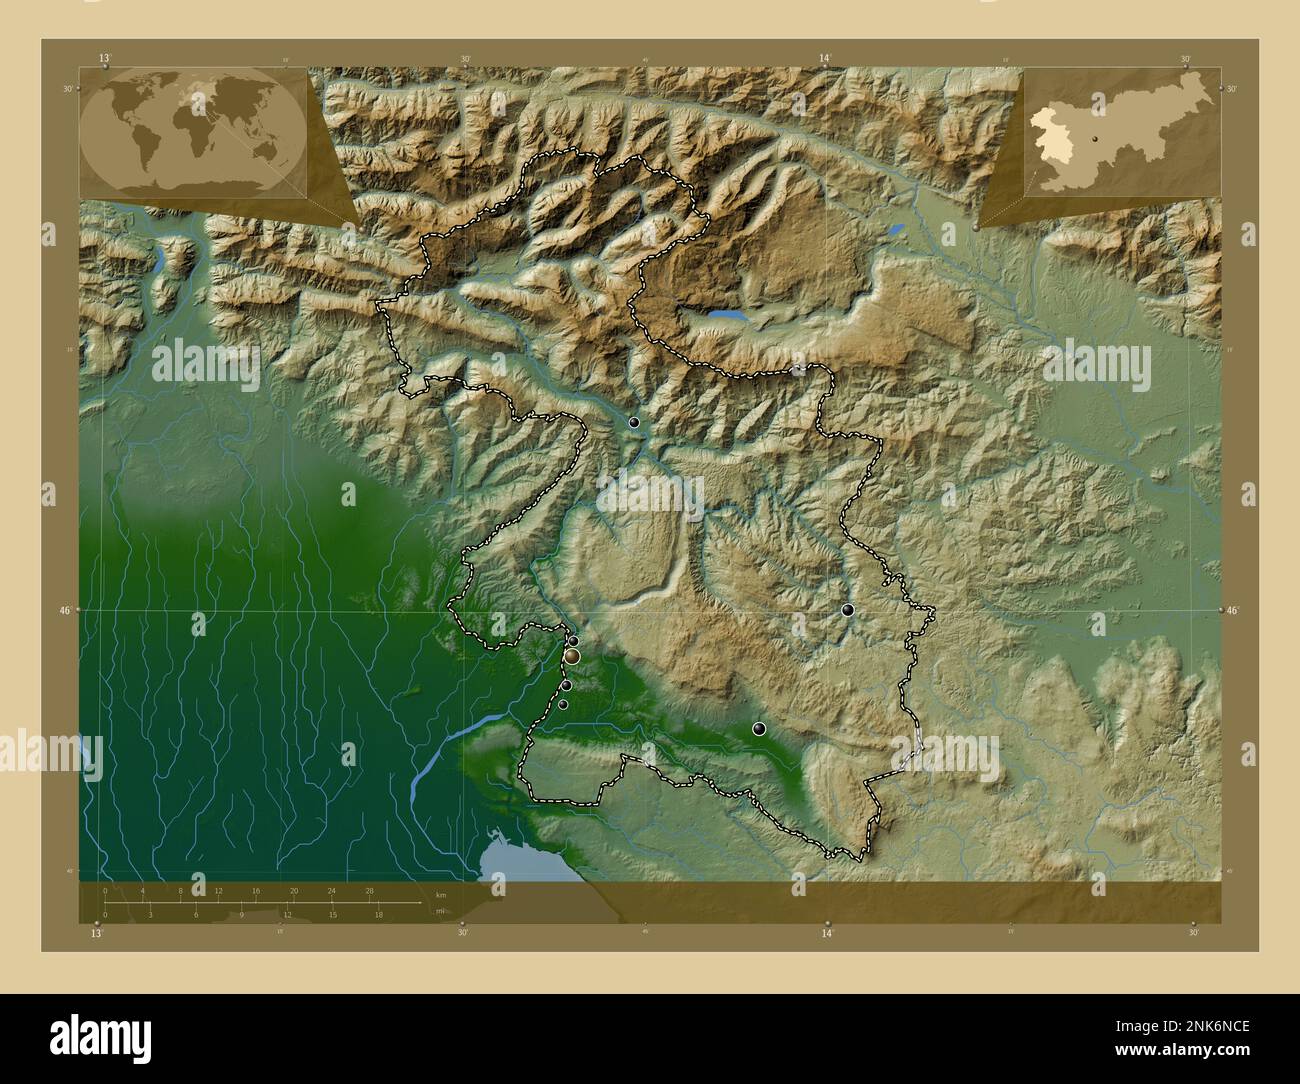 Goriska, regione statistica della Slovenia. Mappa di altitudine colorata con laghi e fiumi. Posizioni delle principali città della regione. Posizione ausiliaria d'angolo Foto Stock